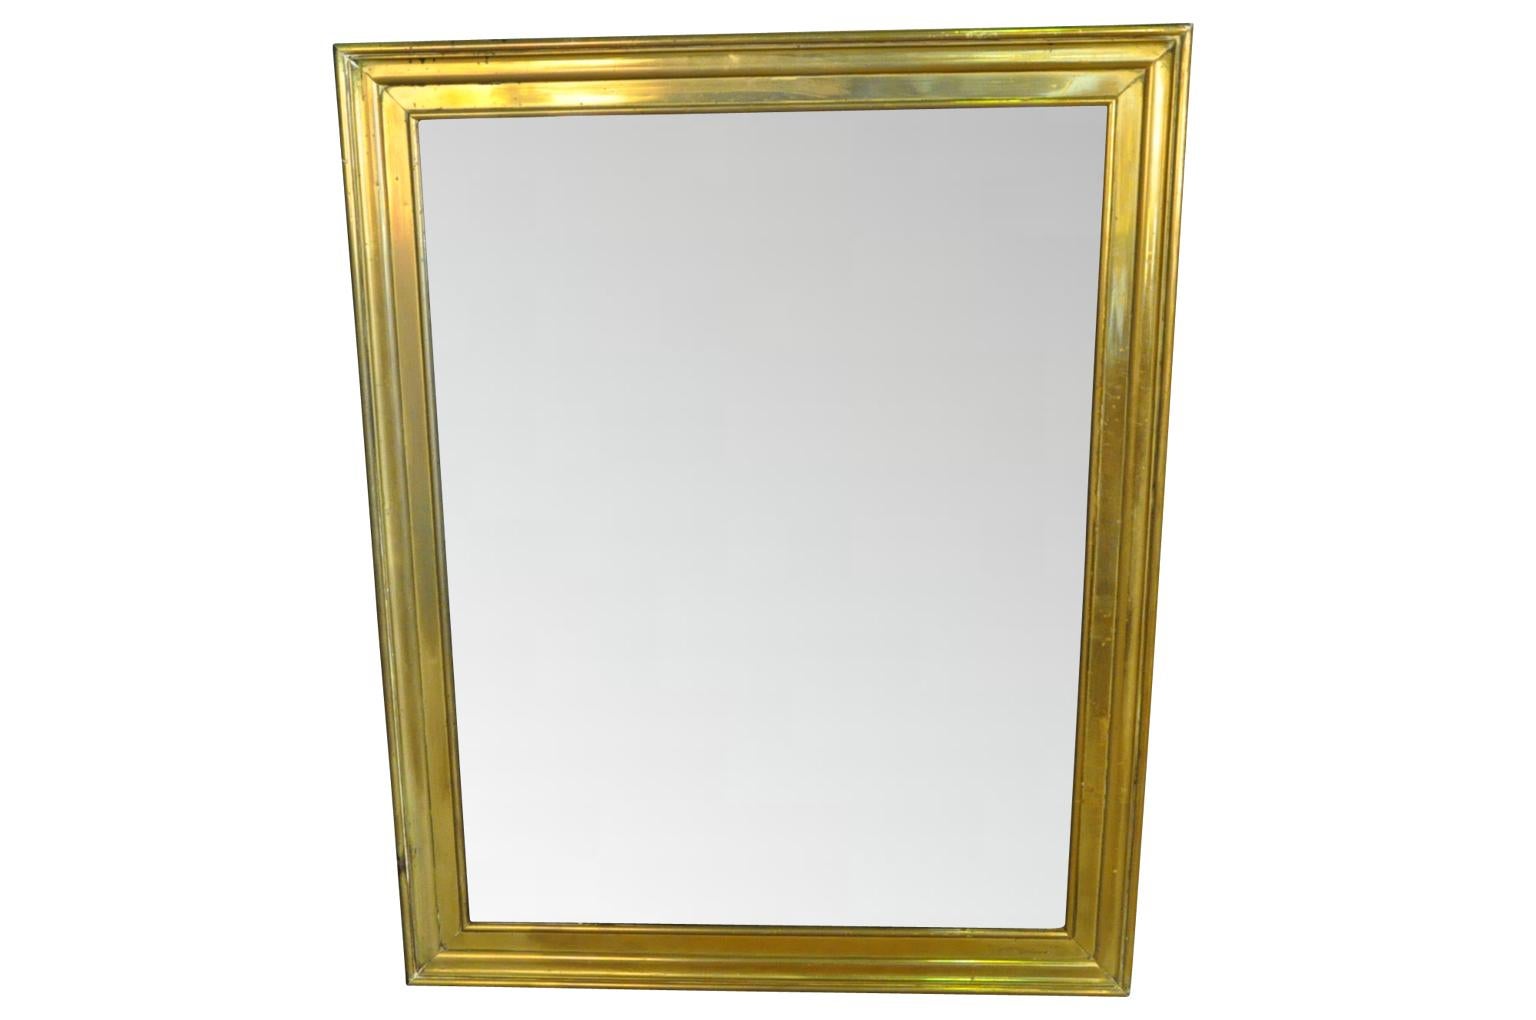 Ein sehr auffälliger französischer Spiegel aus dem späten 19. Jahrhundert aus schön geformtem Messing. Die klaren Linien dieses Spiegels verleihen ihm ein sehr klassisches und modernes Aussehen. Der Spiegel hat sein ursprüngliches Quecksilberglas